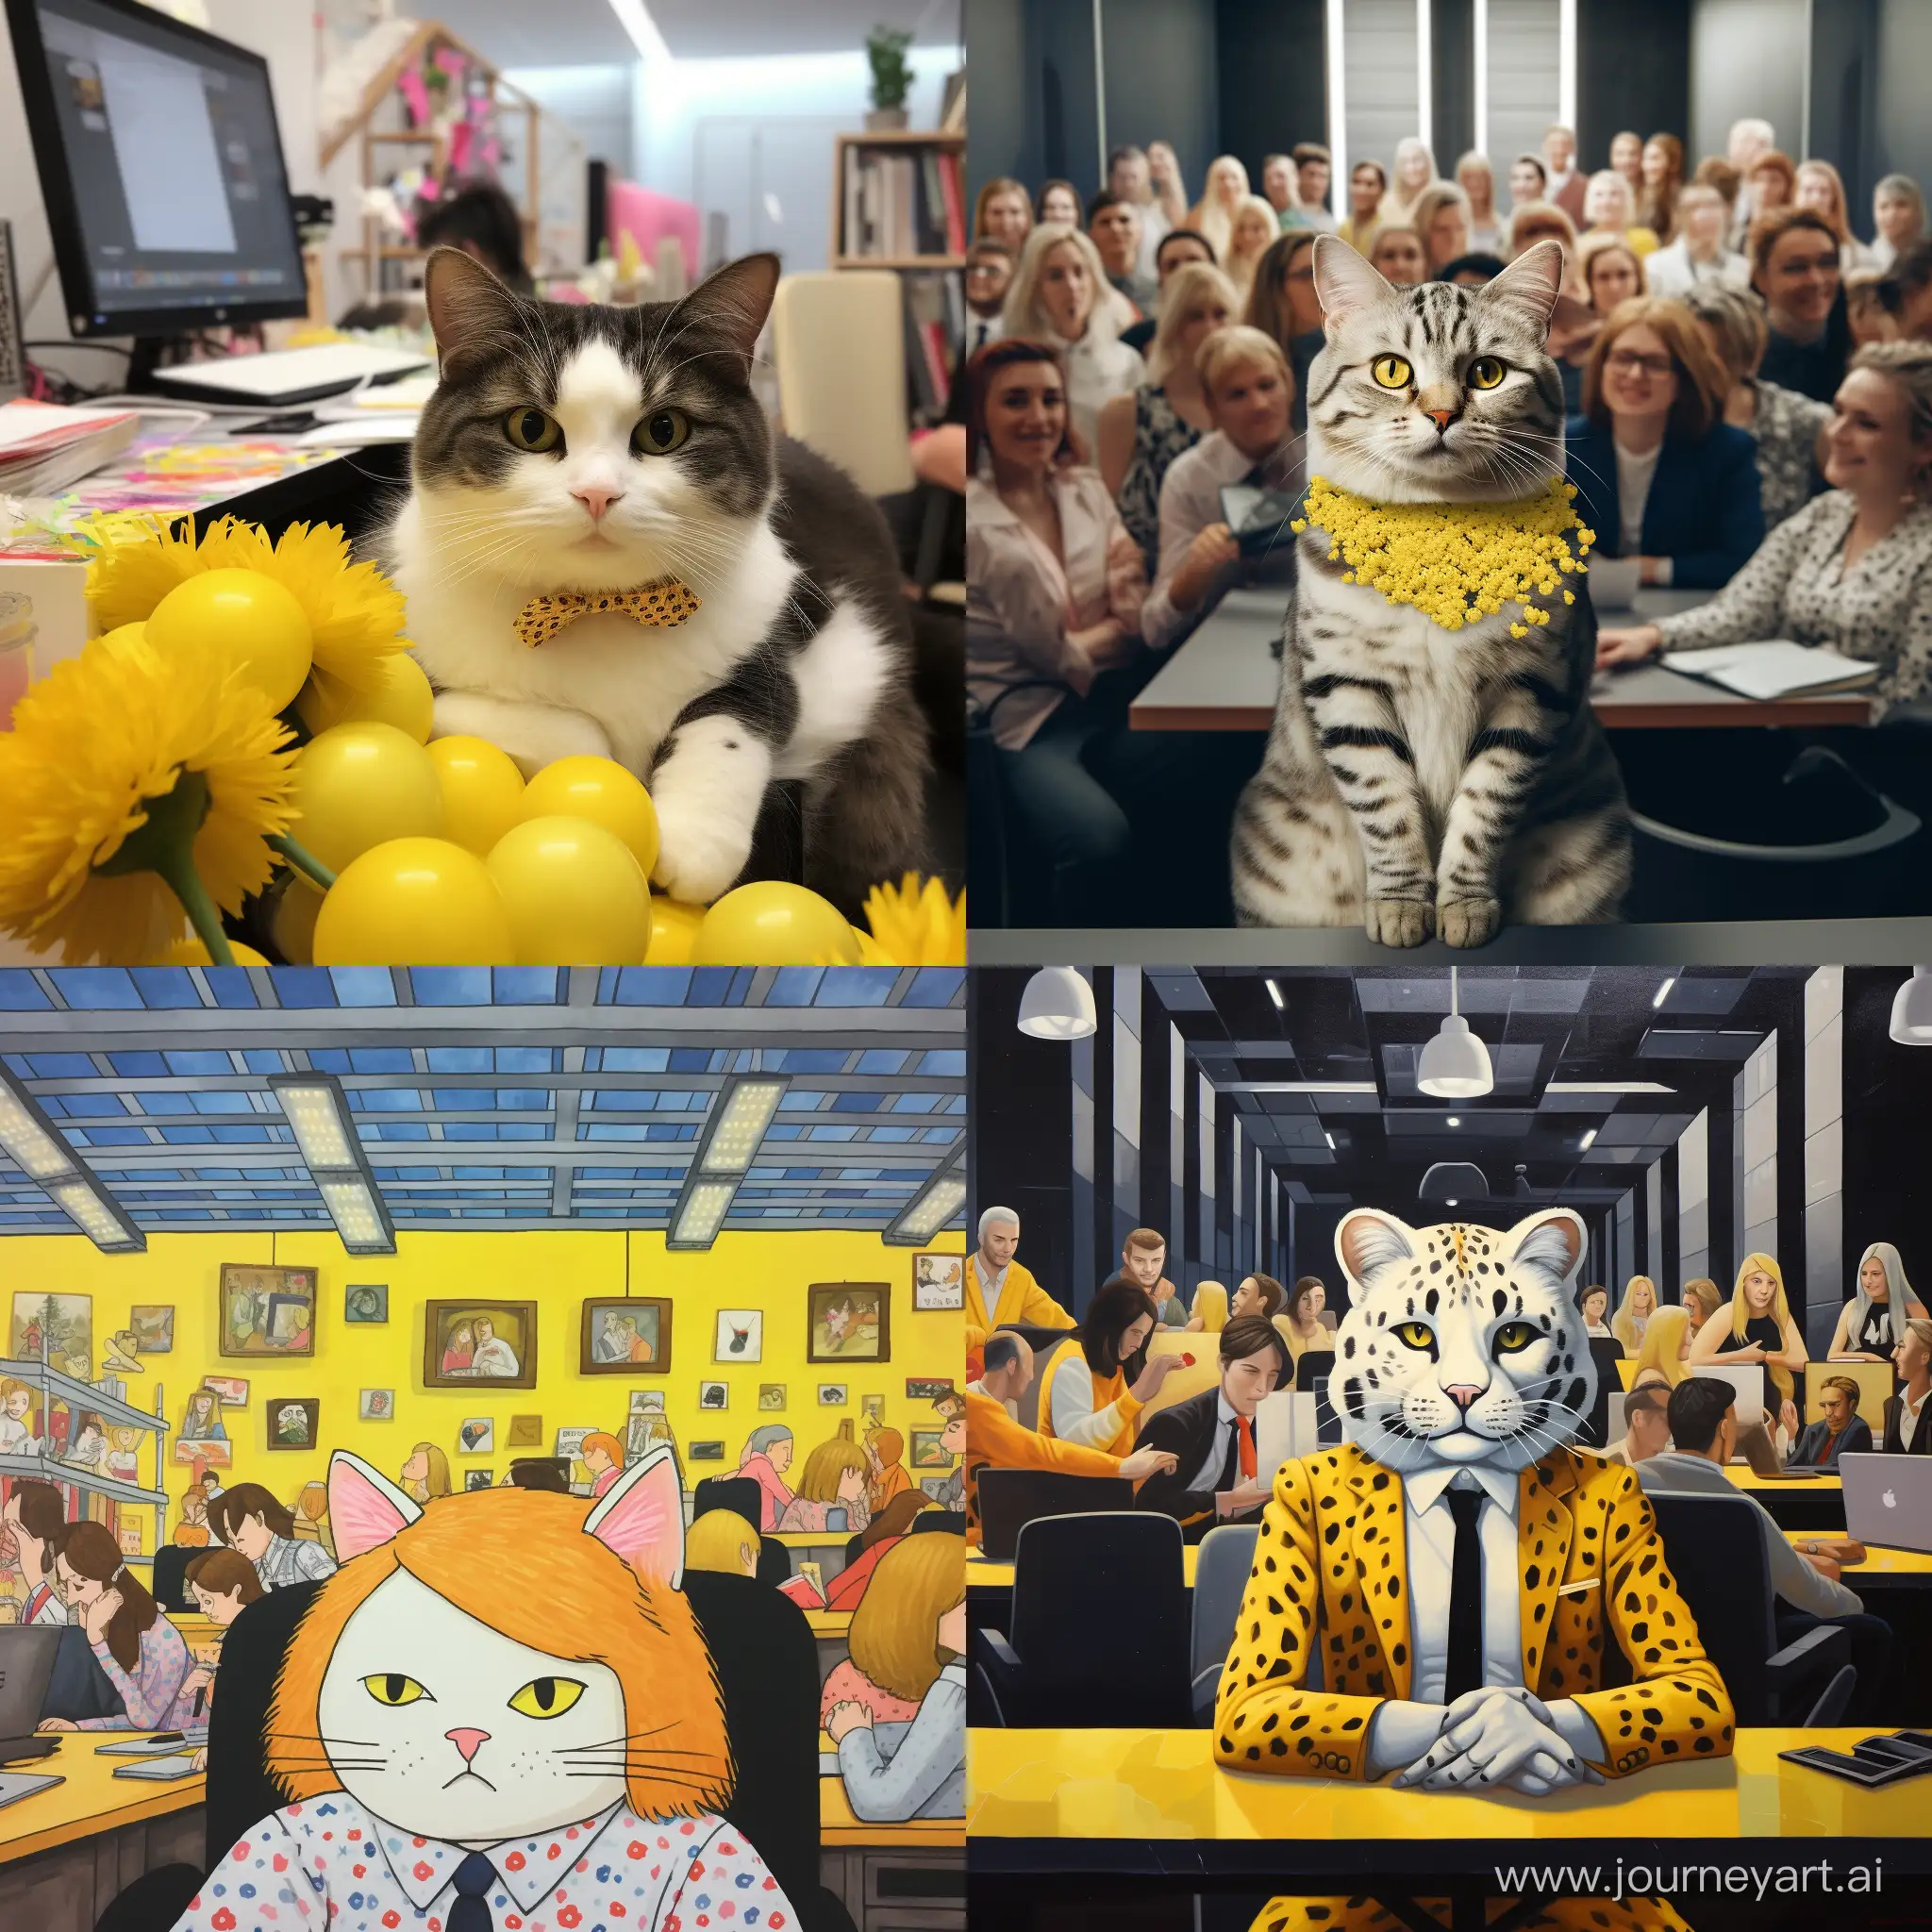 кошка с желто-белыми пятнами в офисе среди людей
